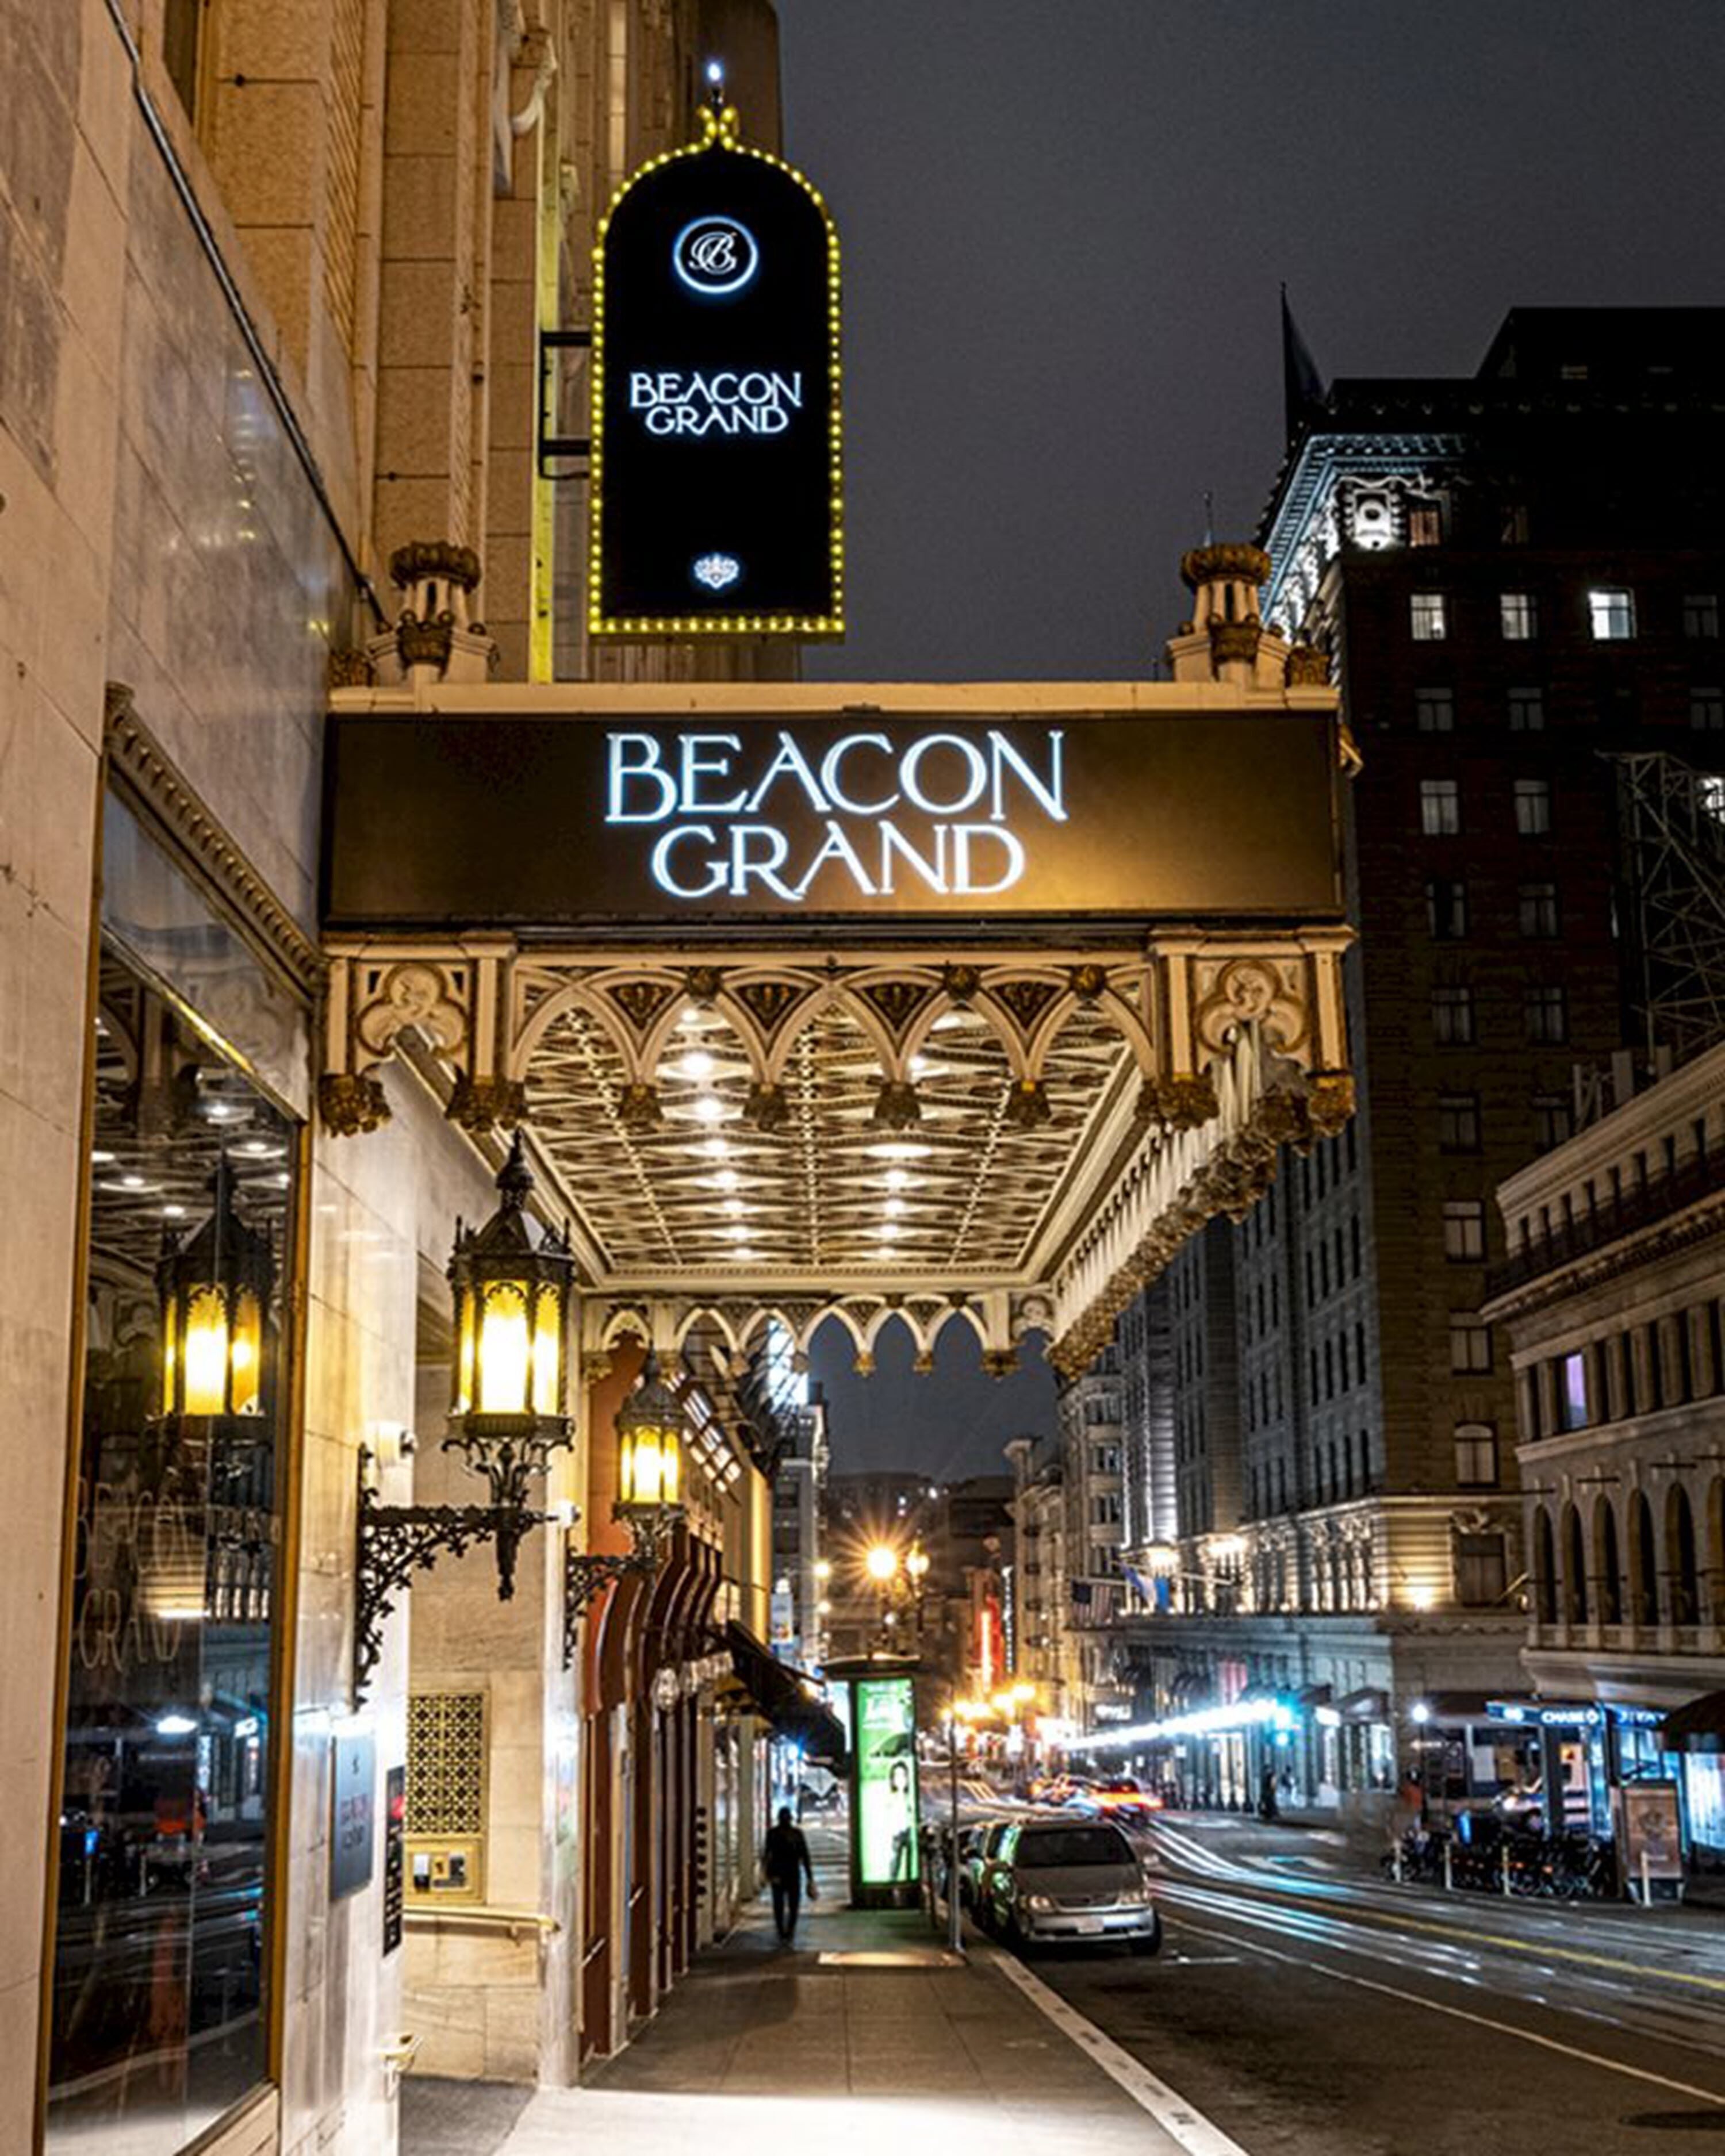 Beacon Grand, A Union Square Hotel